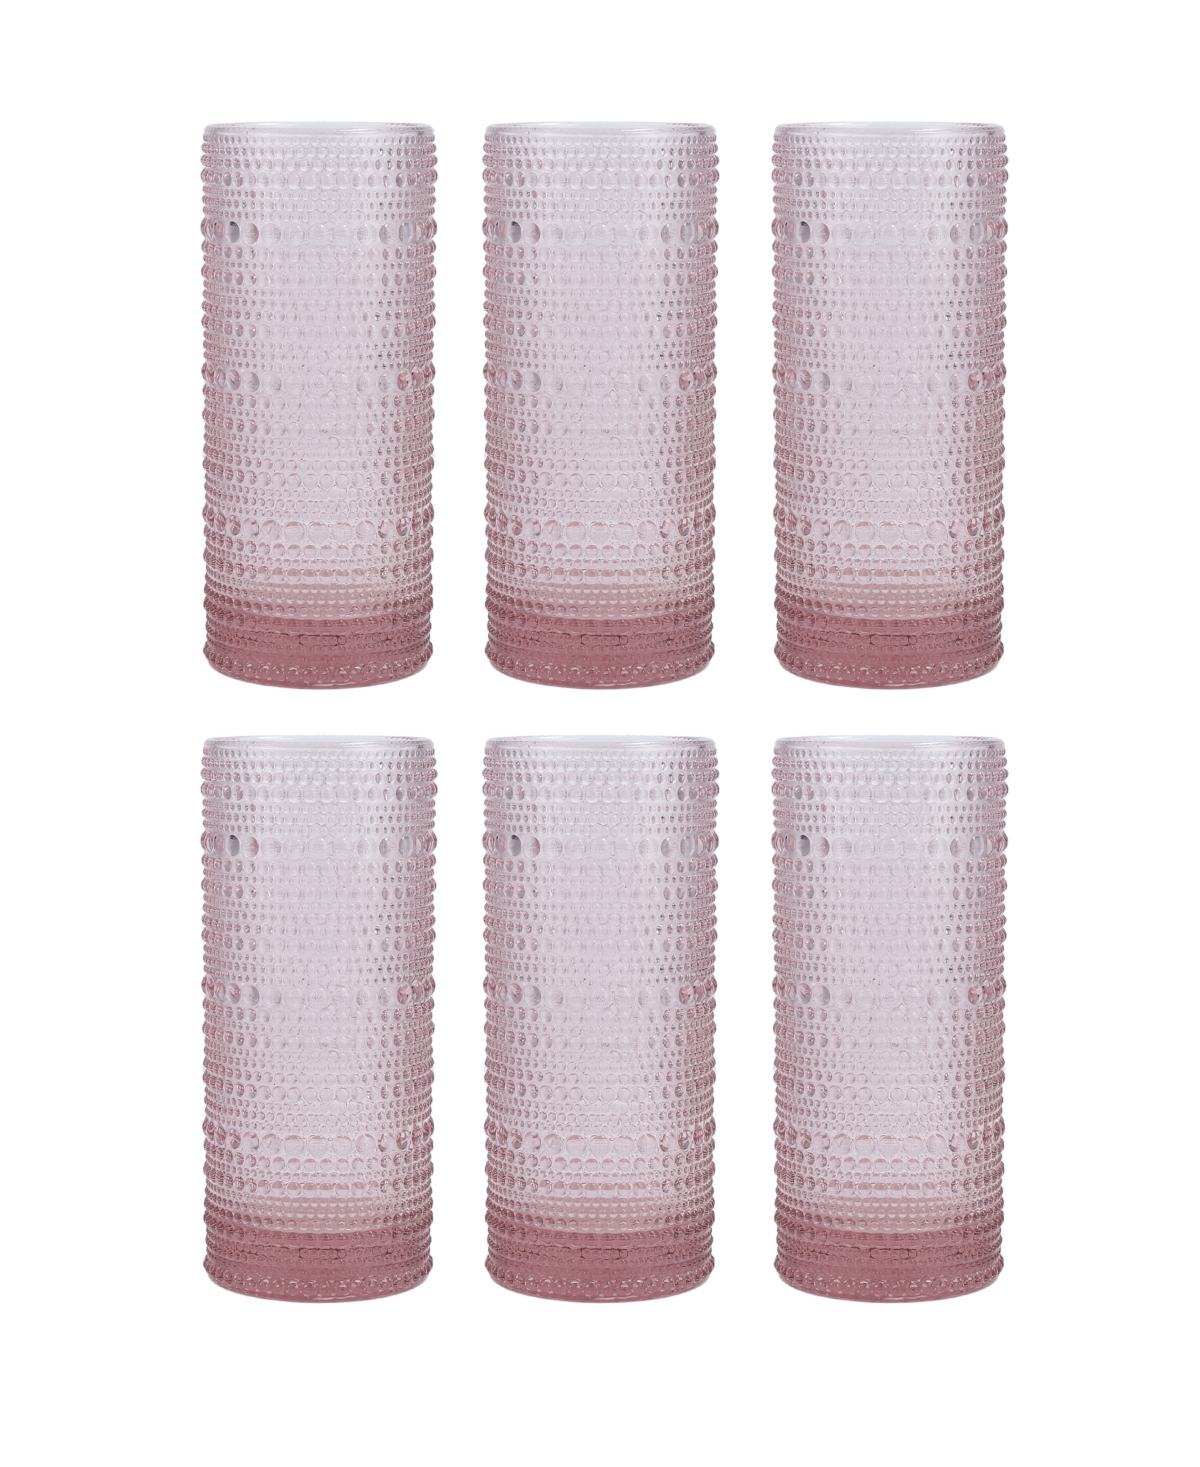 Fortessa Jupiter 10.8 oz Collins Highball Glass 6-piece Set In Pink